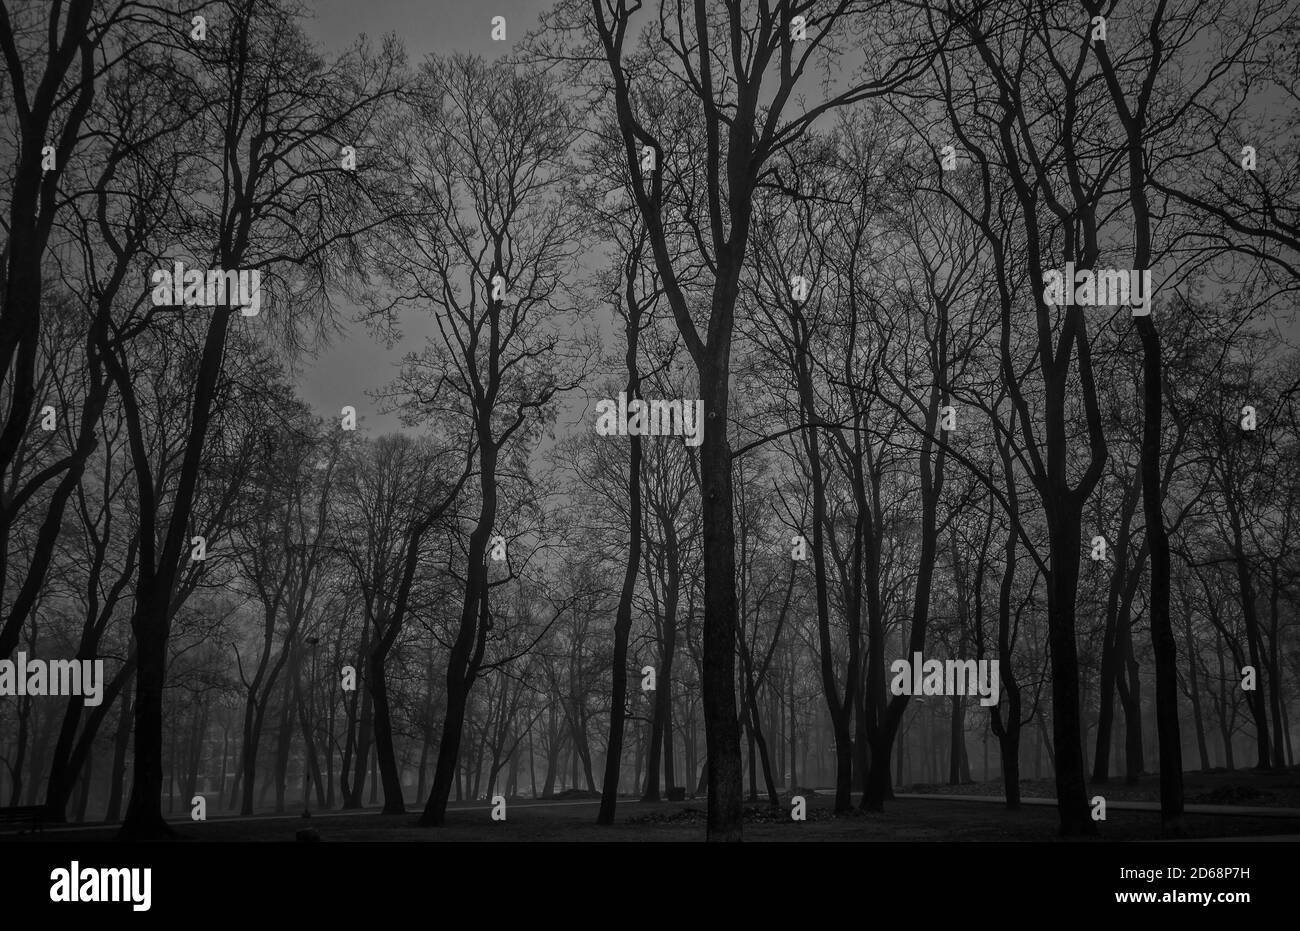 Atmosphère mystérieuse et désossée dans une forêt sombre. Silhouettes d'arbres. Paysage de bois effrayant. Prise de vue en noir et blanc. Banque D'Images